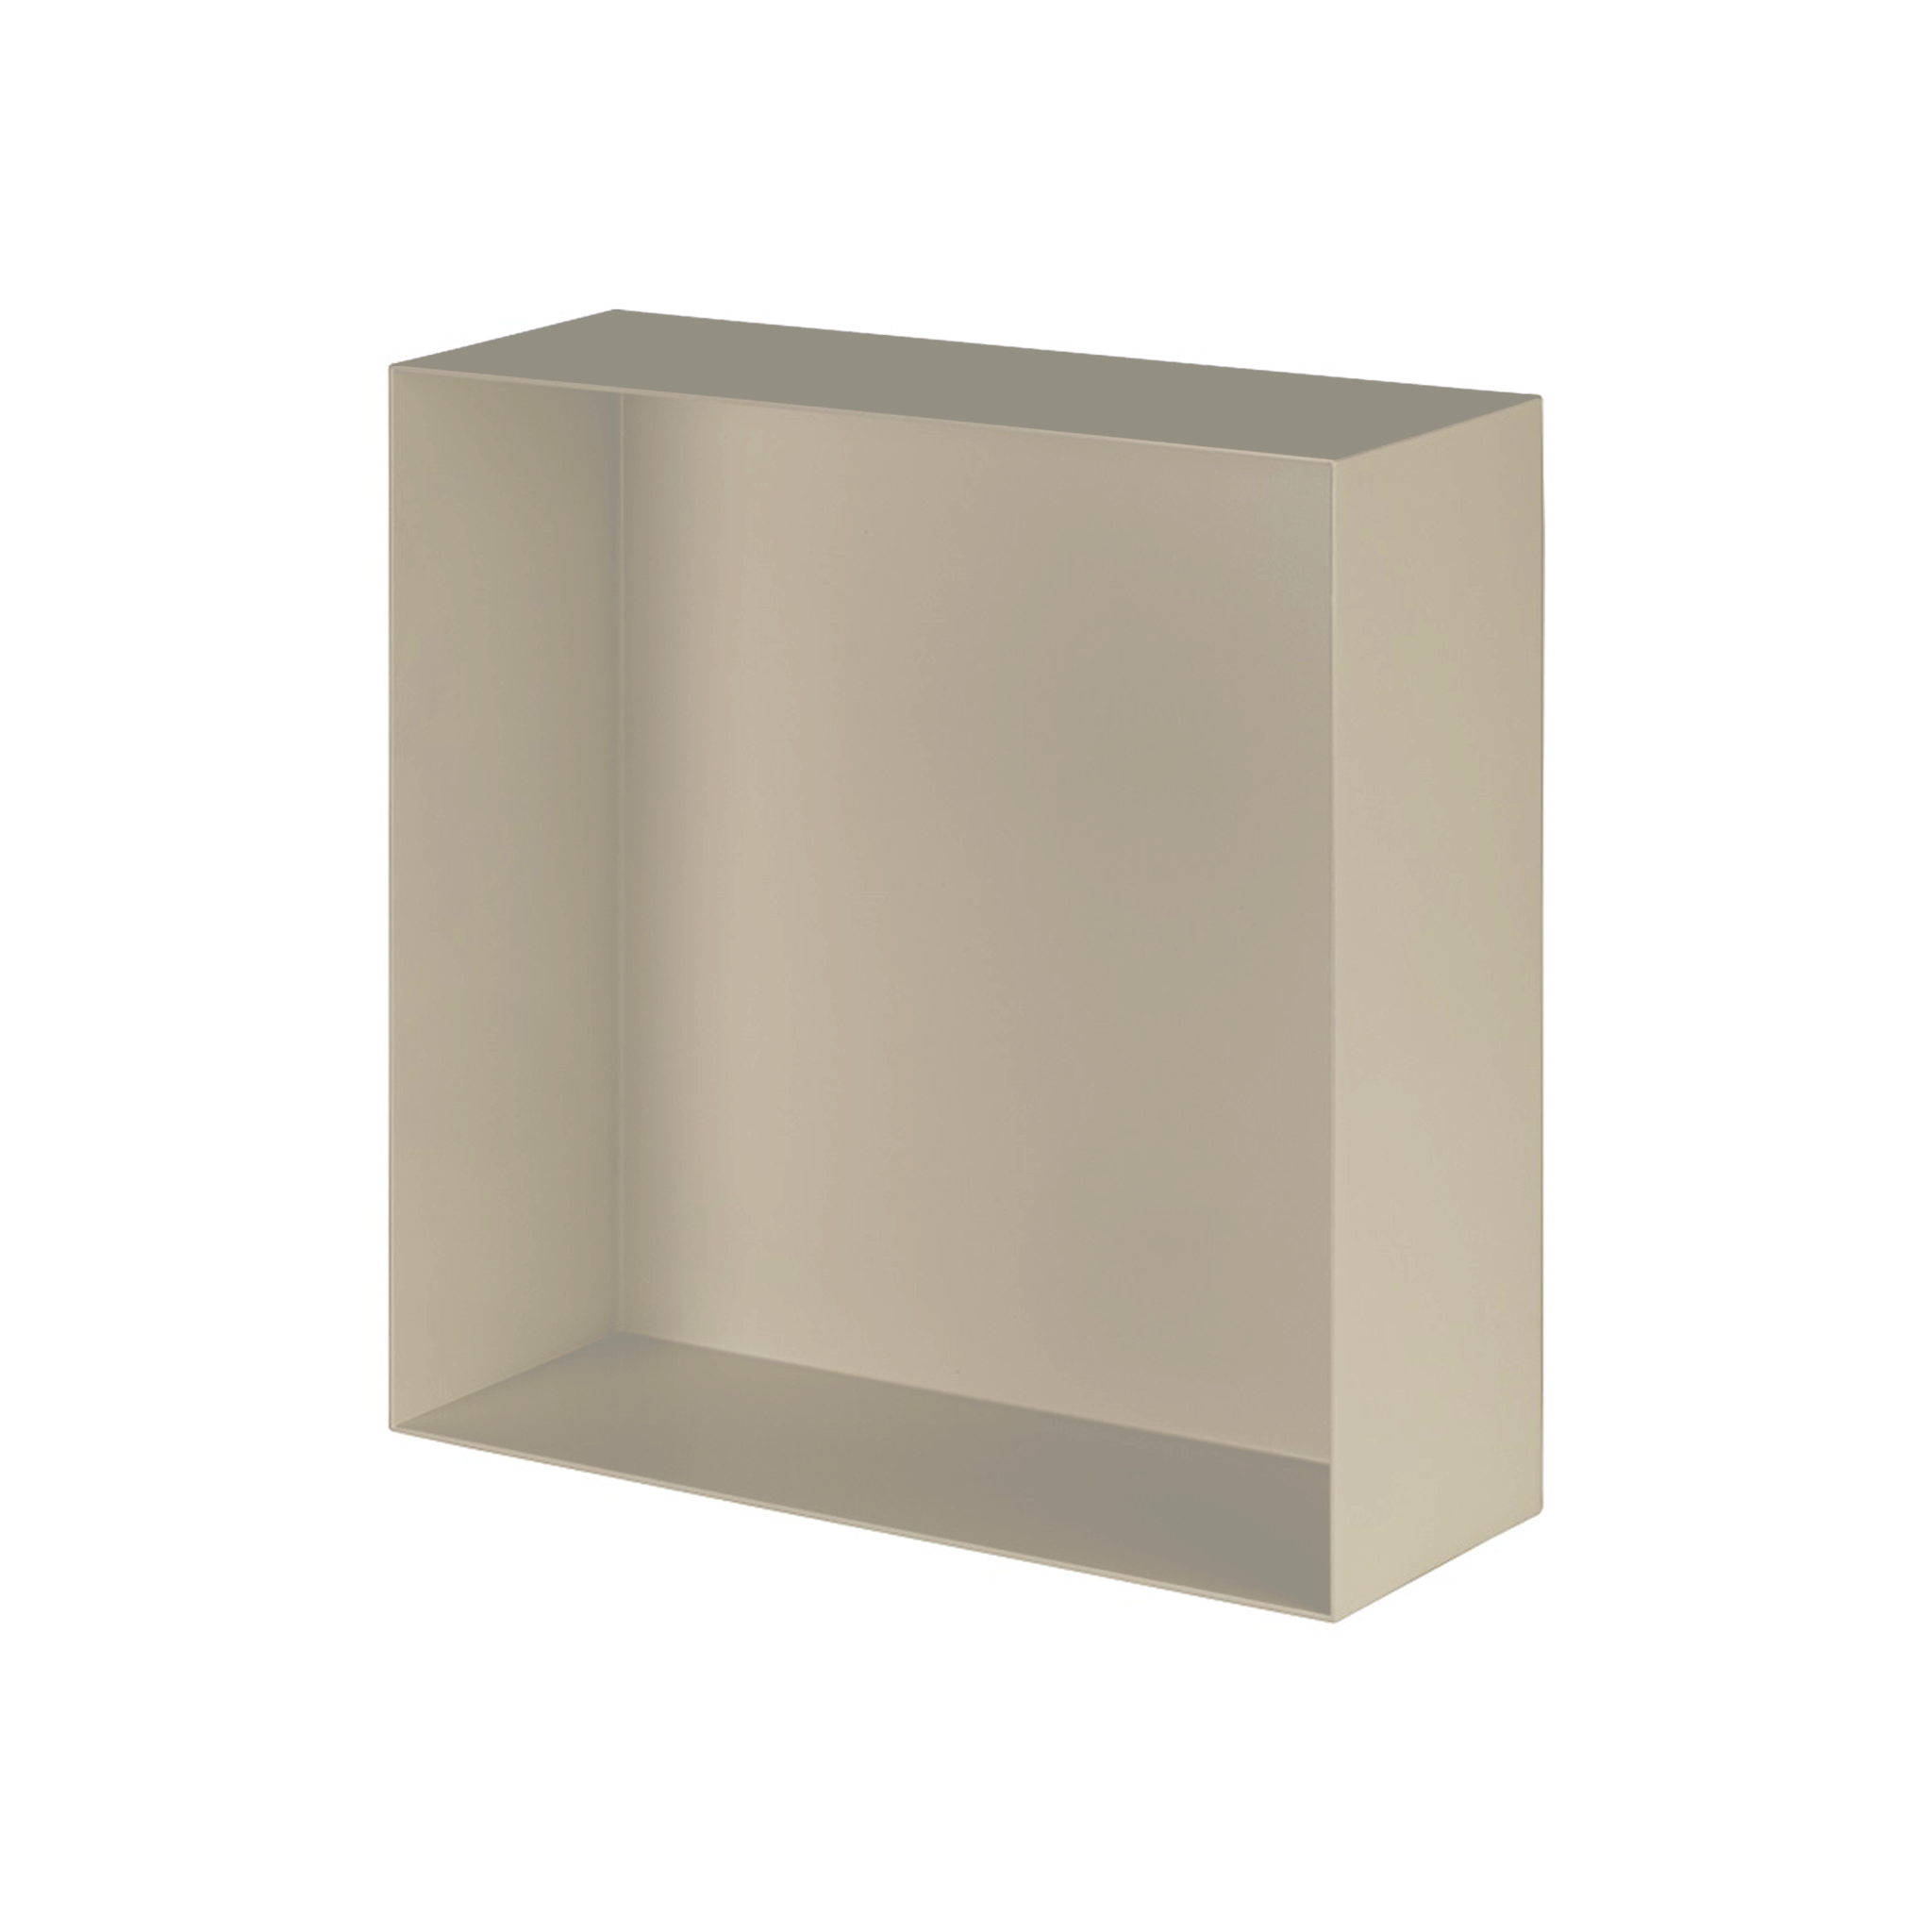 Valli Home – V-Box, Nicchia portaoggetti in Metallo smaltato color Grigio Chiaro KK64, Misura 30X30 P. 10 cm – V-BOX.MLLO.30X30.64